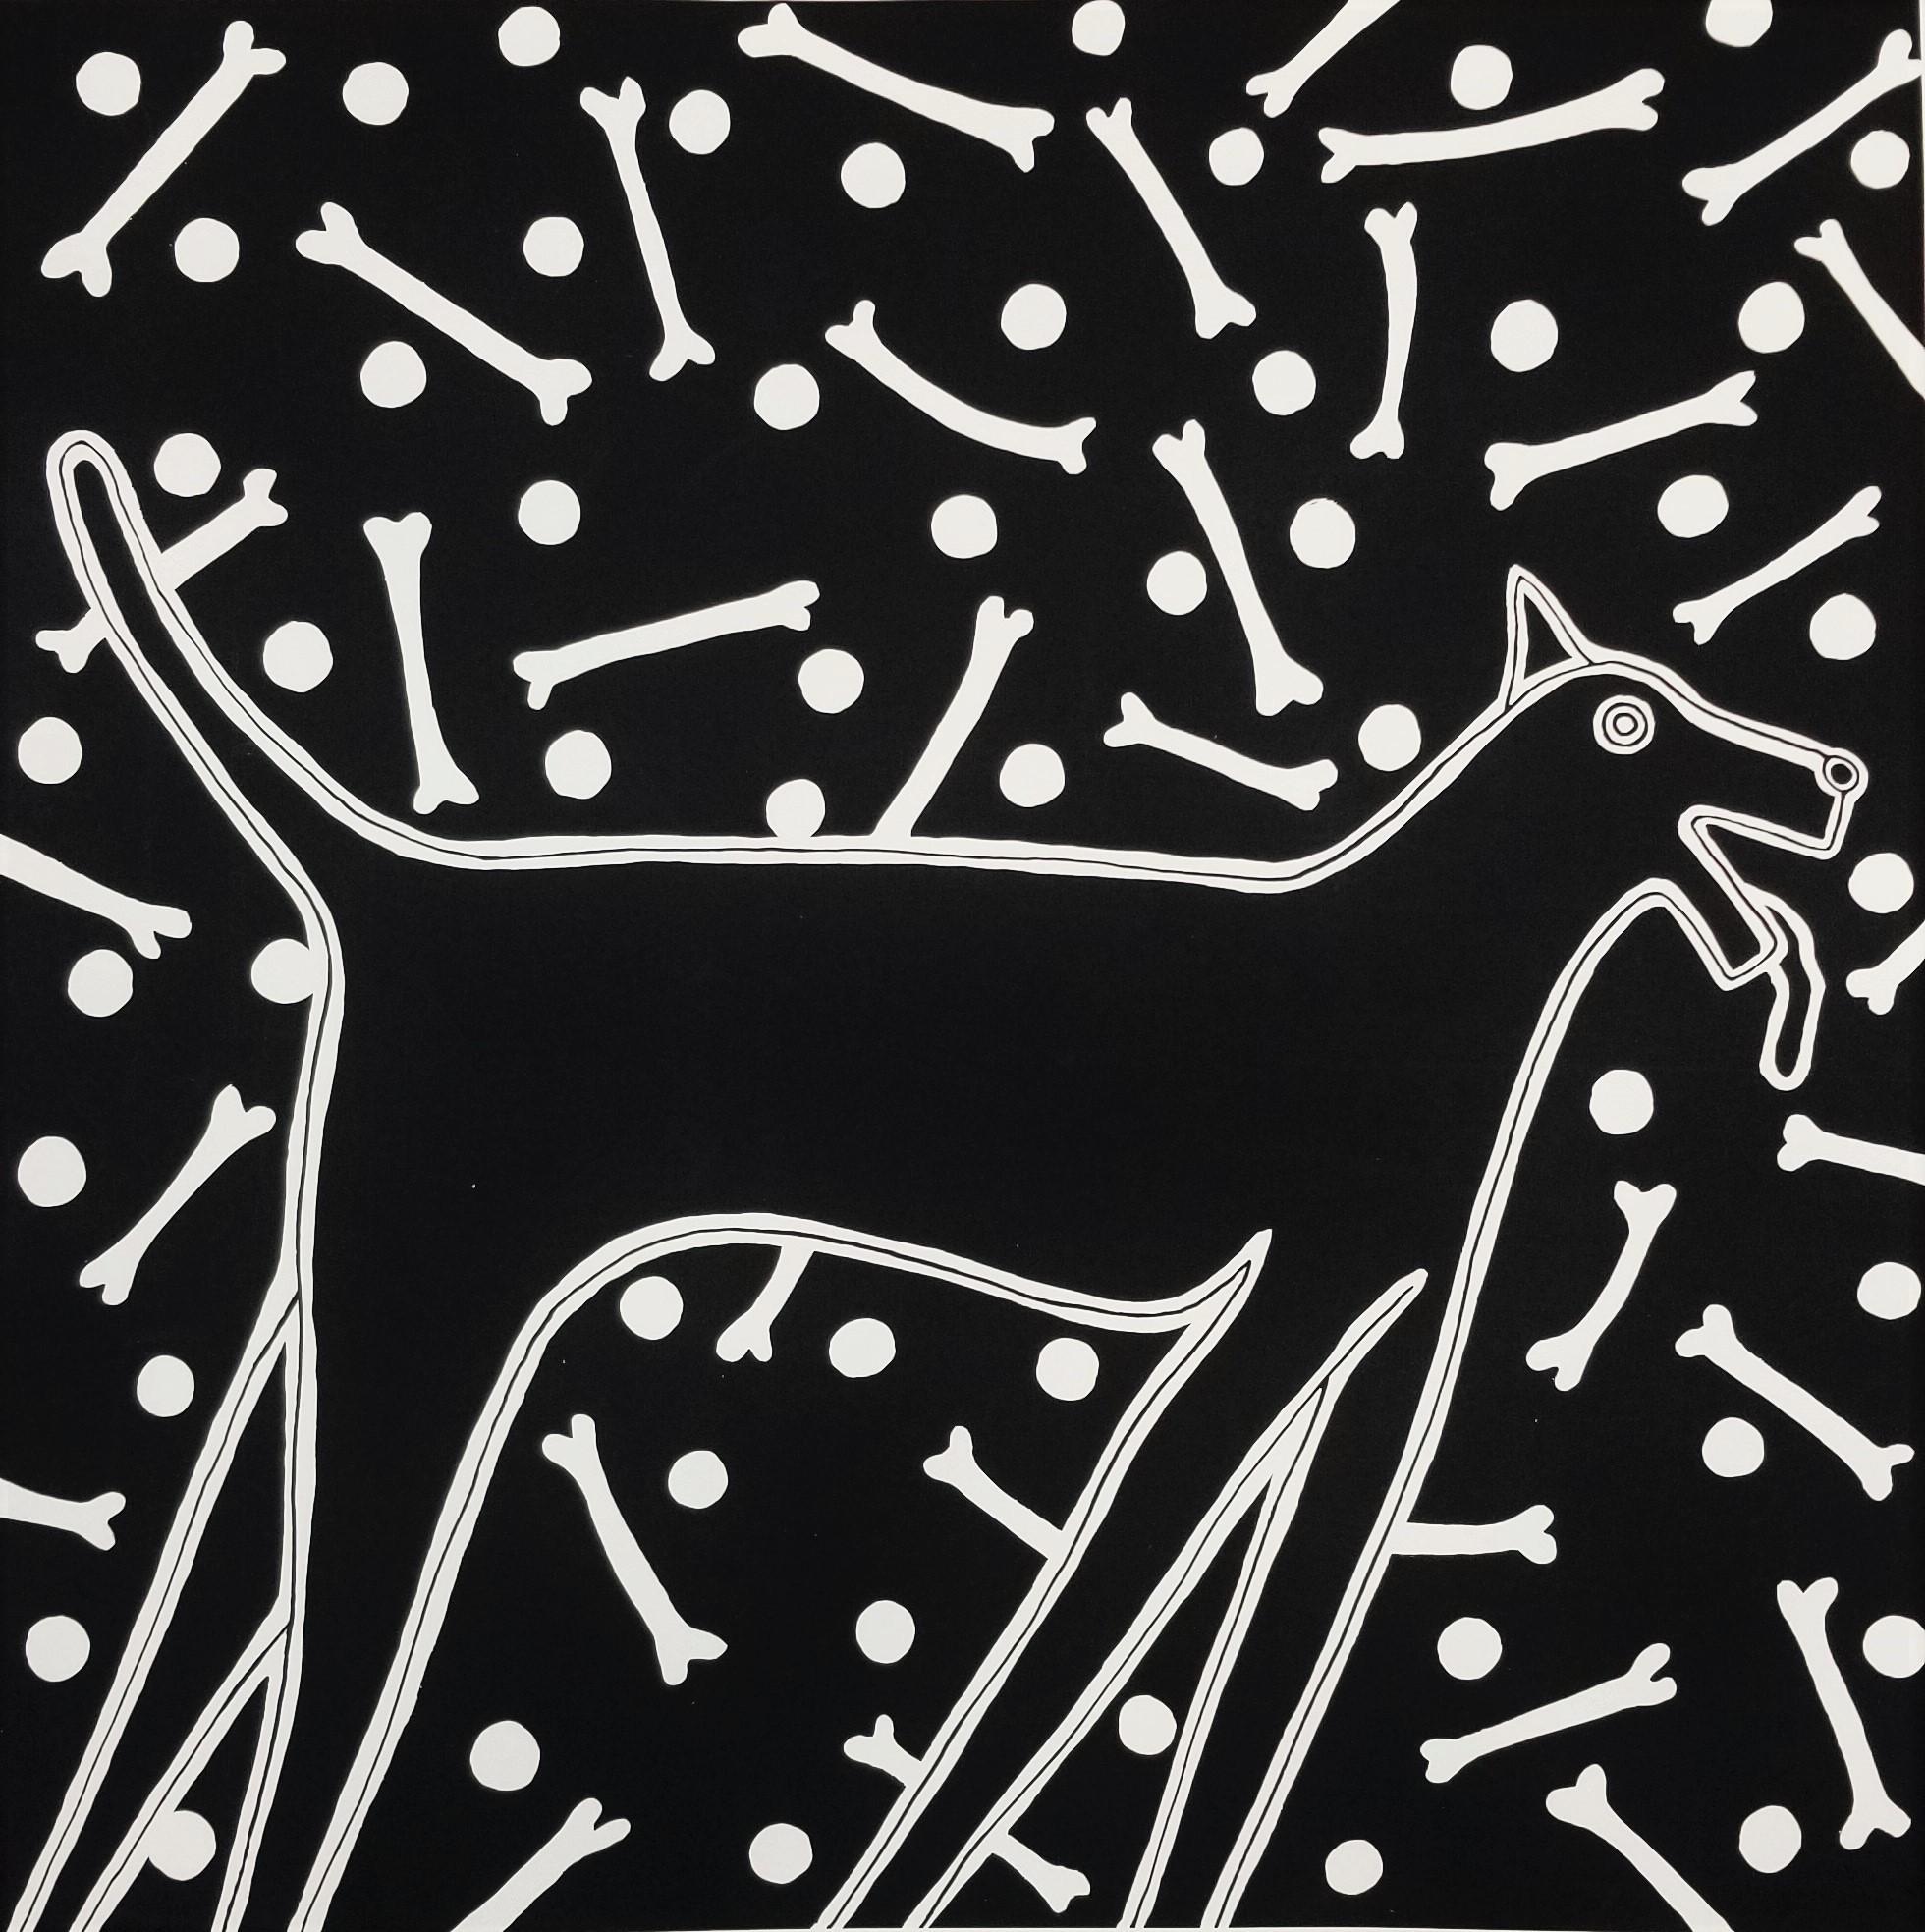 Dan May Animal Print - Dog Dreams (Black) /// Contemporary Screenprint Animal Funny Humor Pet